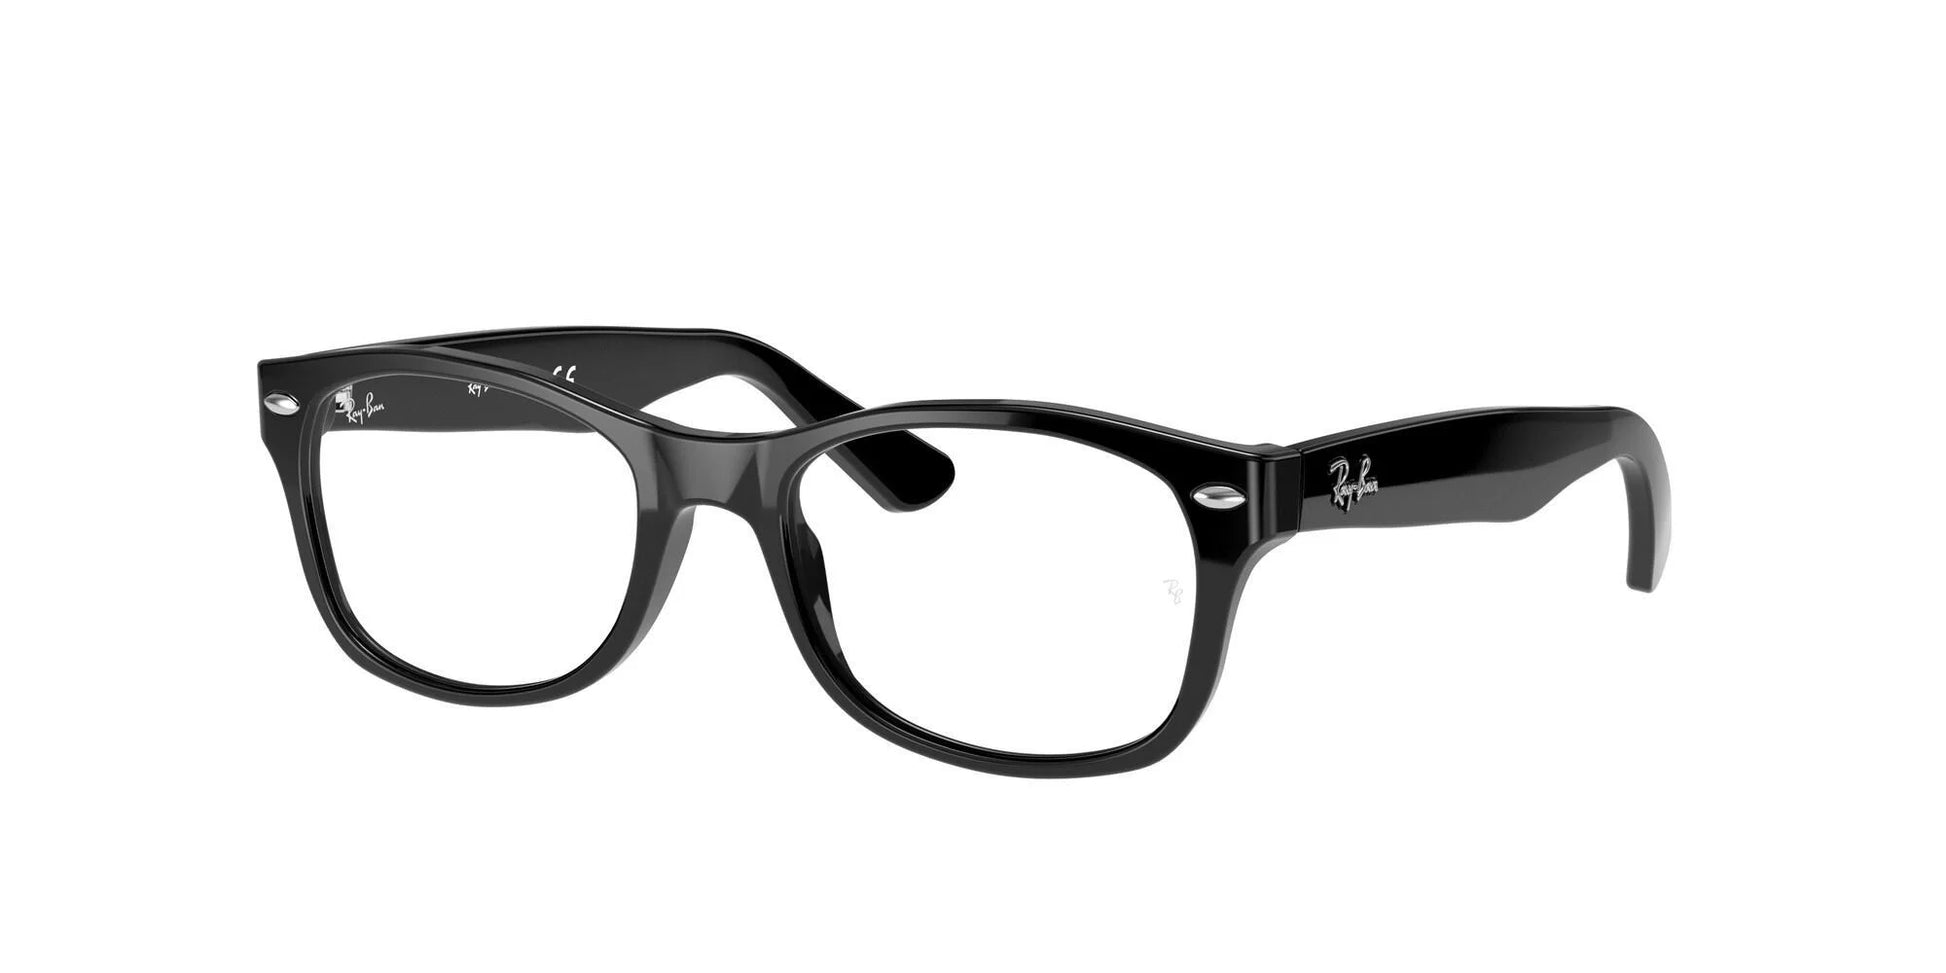 Ray-Ban RY1528 Eyeglasses Black